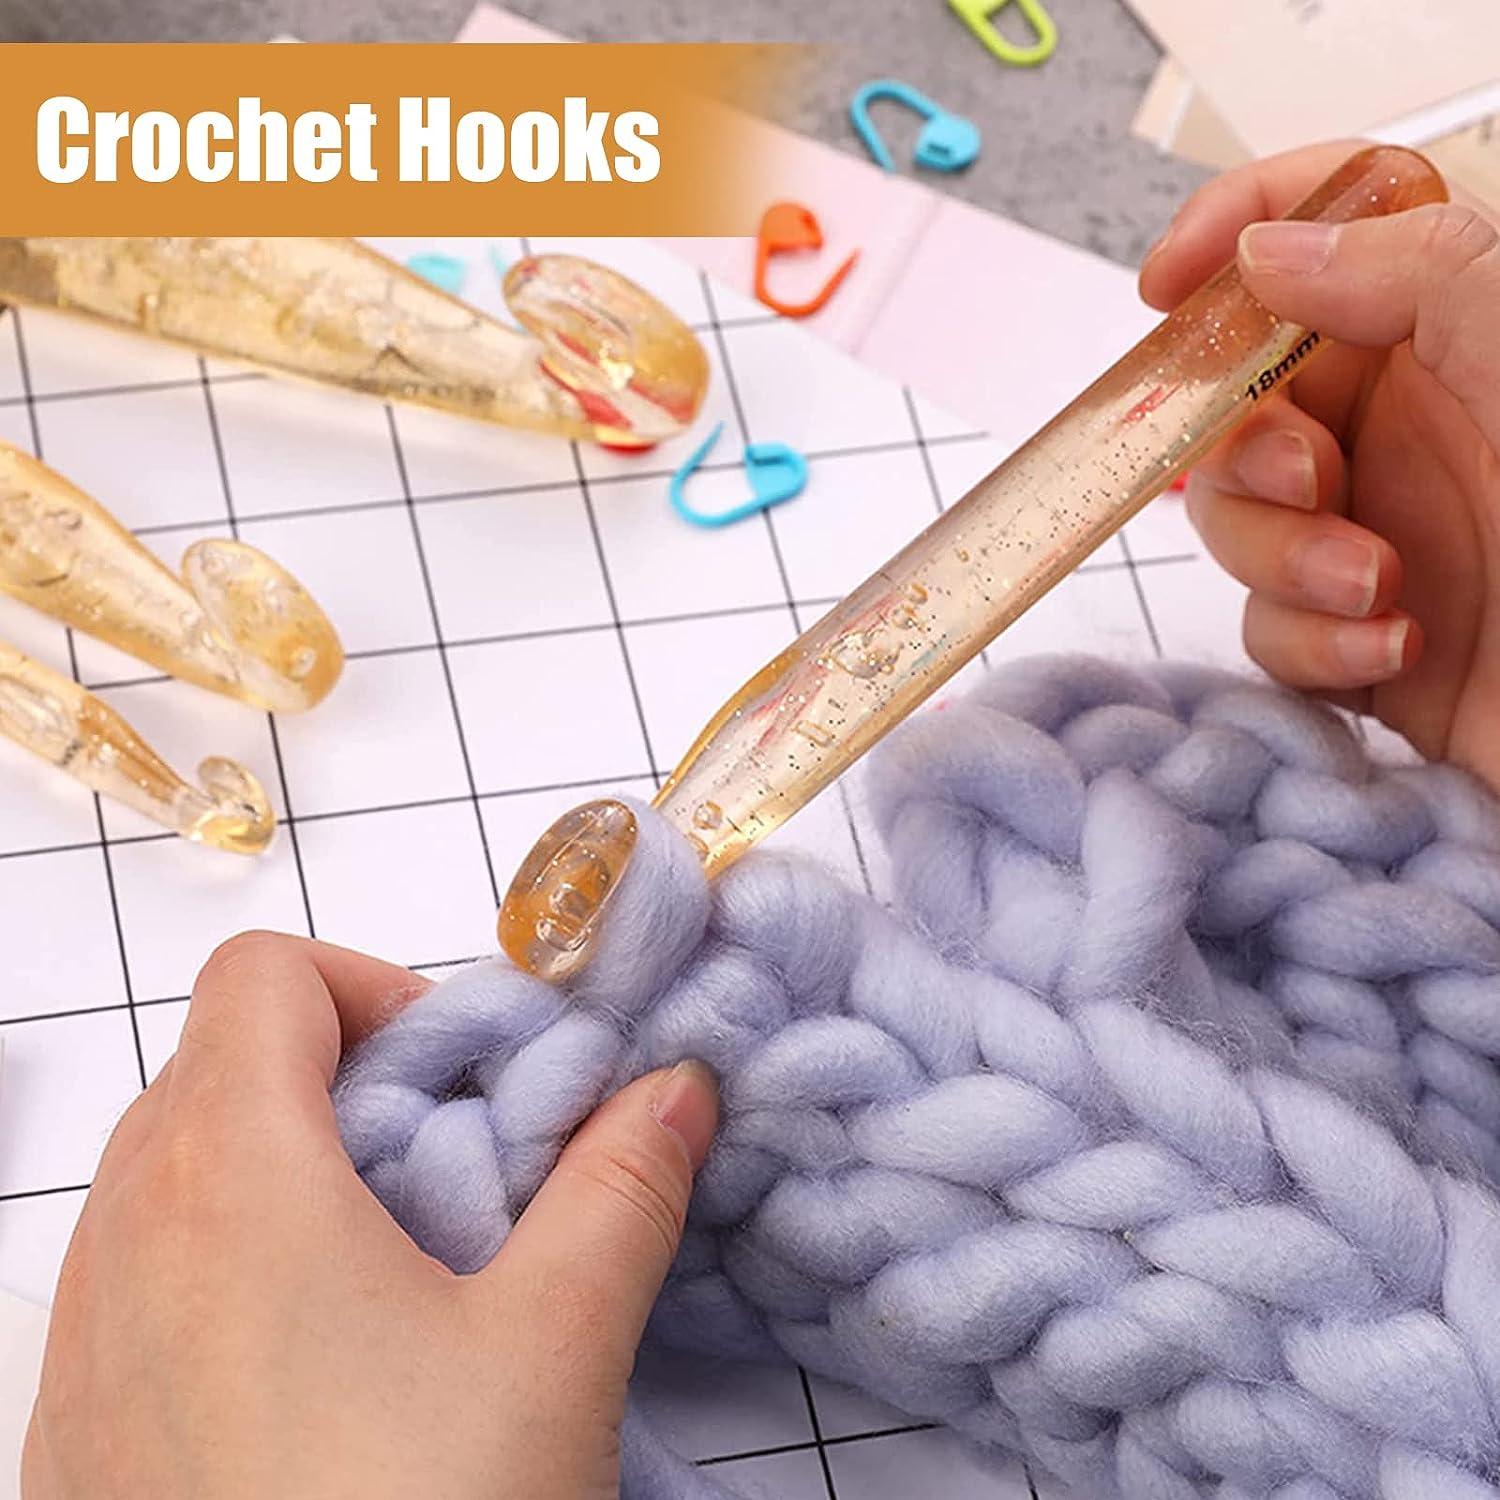  7 Sizes Crochet Hooks Set, Large Crochet Hooks for